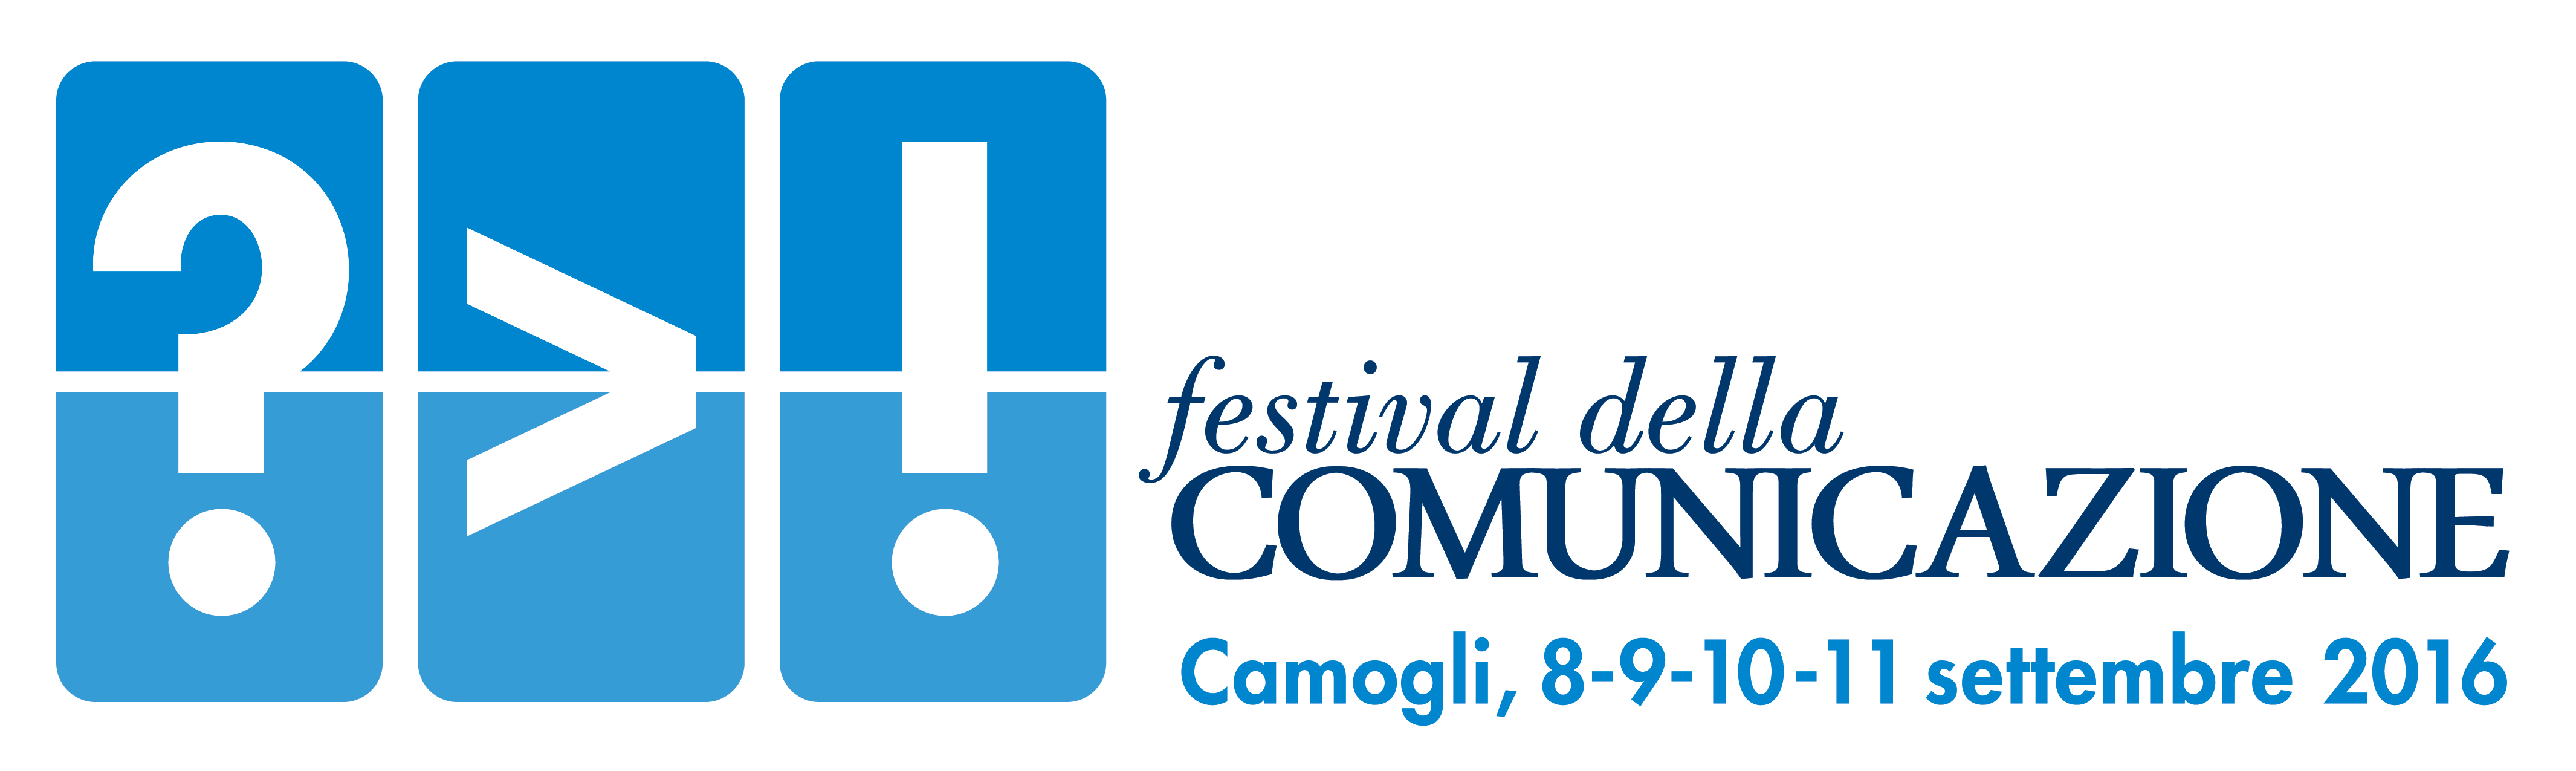 La III edizione del Festival della Comunicazione, a Camogli dall’8 all’11 settembre